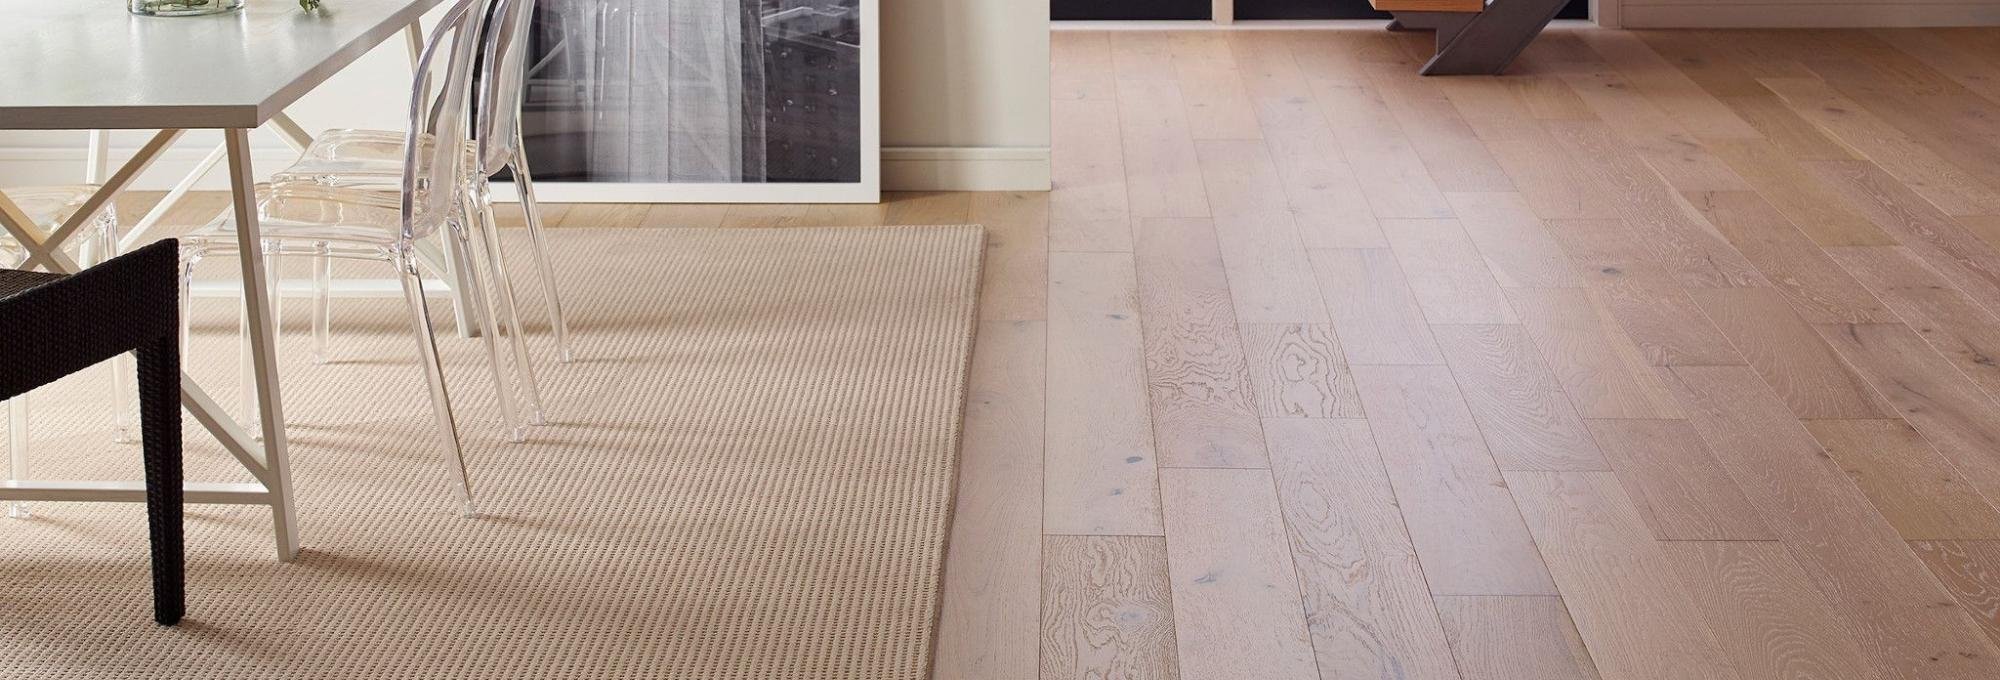 Hardwood flooring by Castillo's Carpet Shack